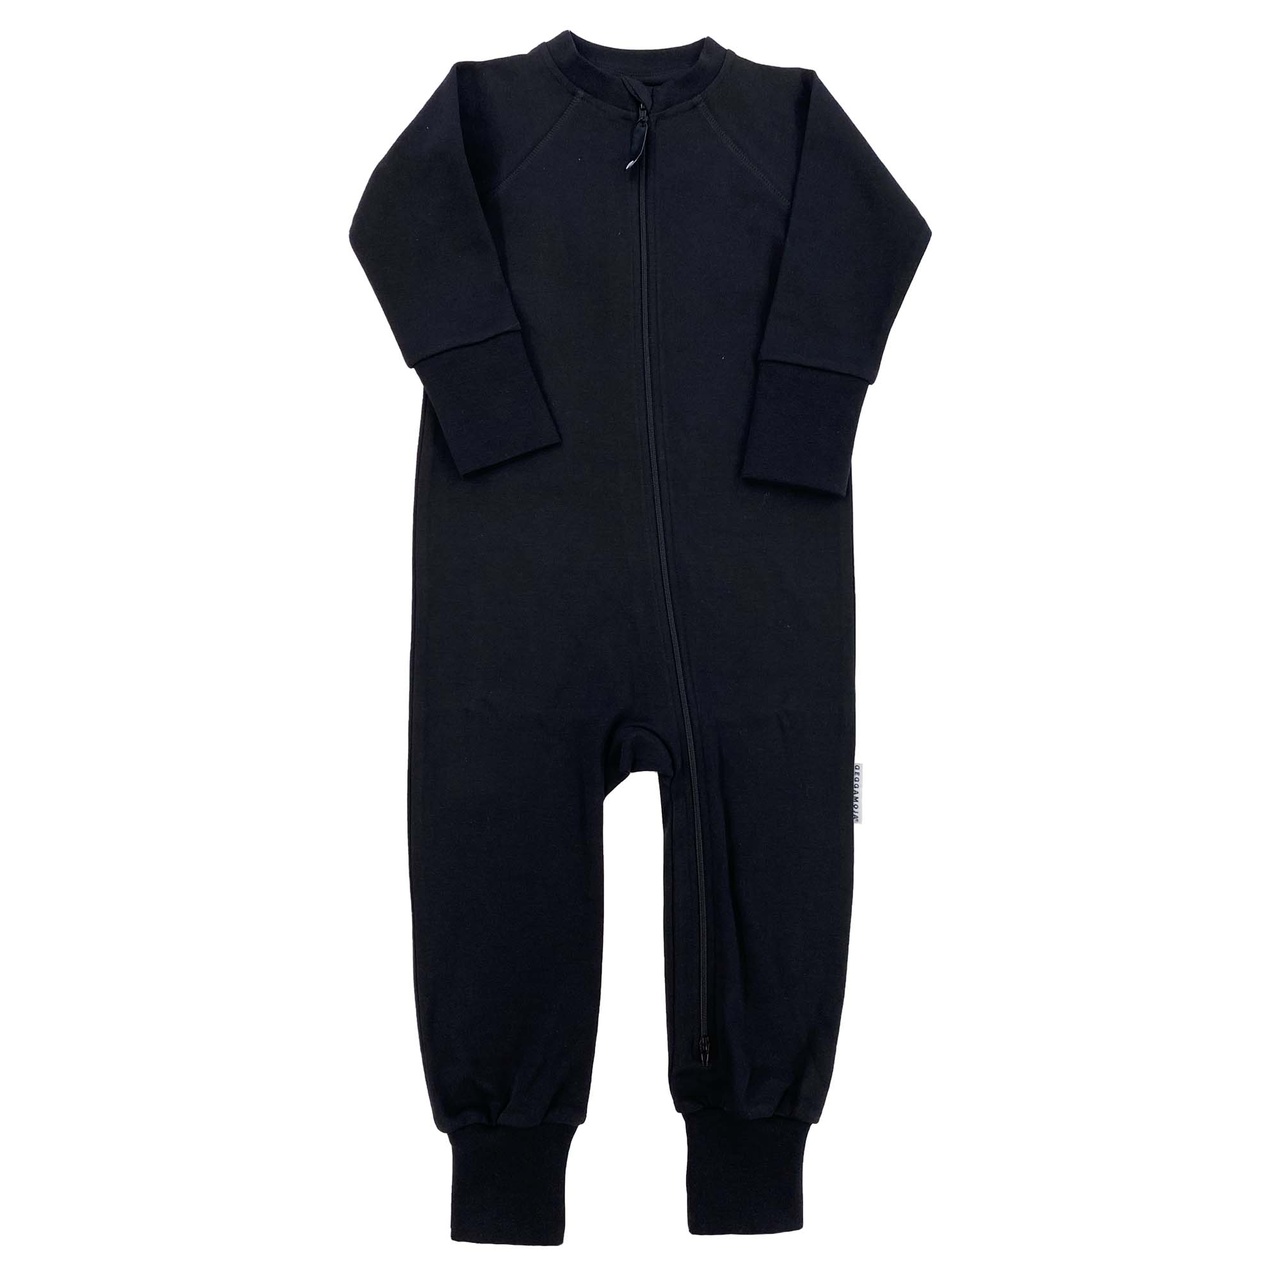 Pyjamas/suit Black 86/92